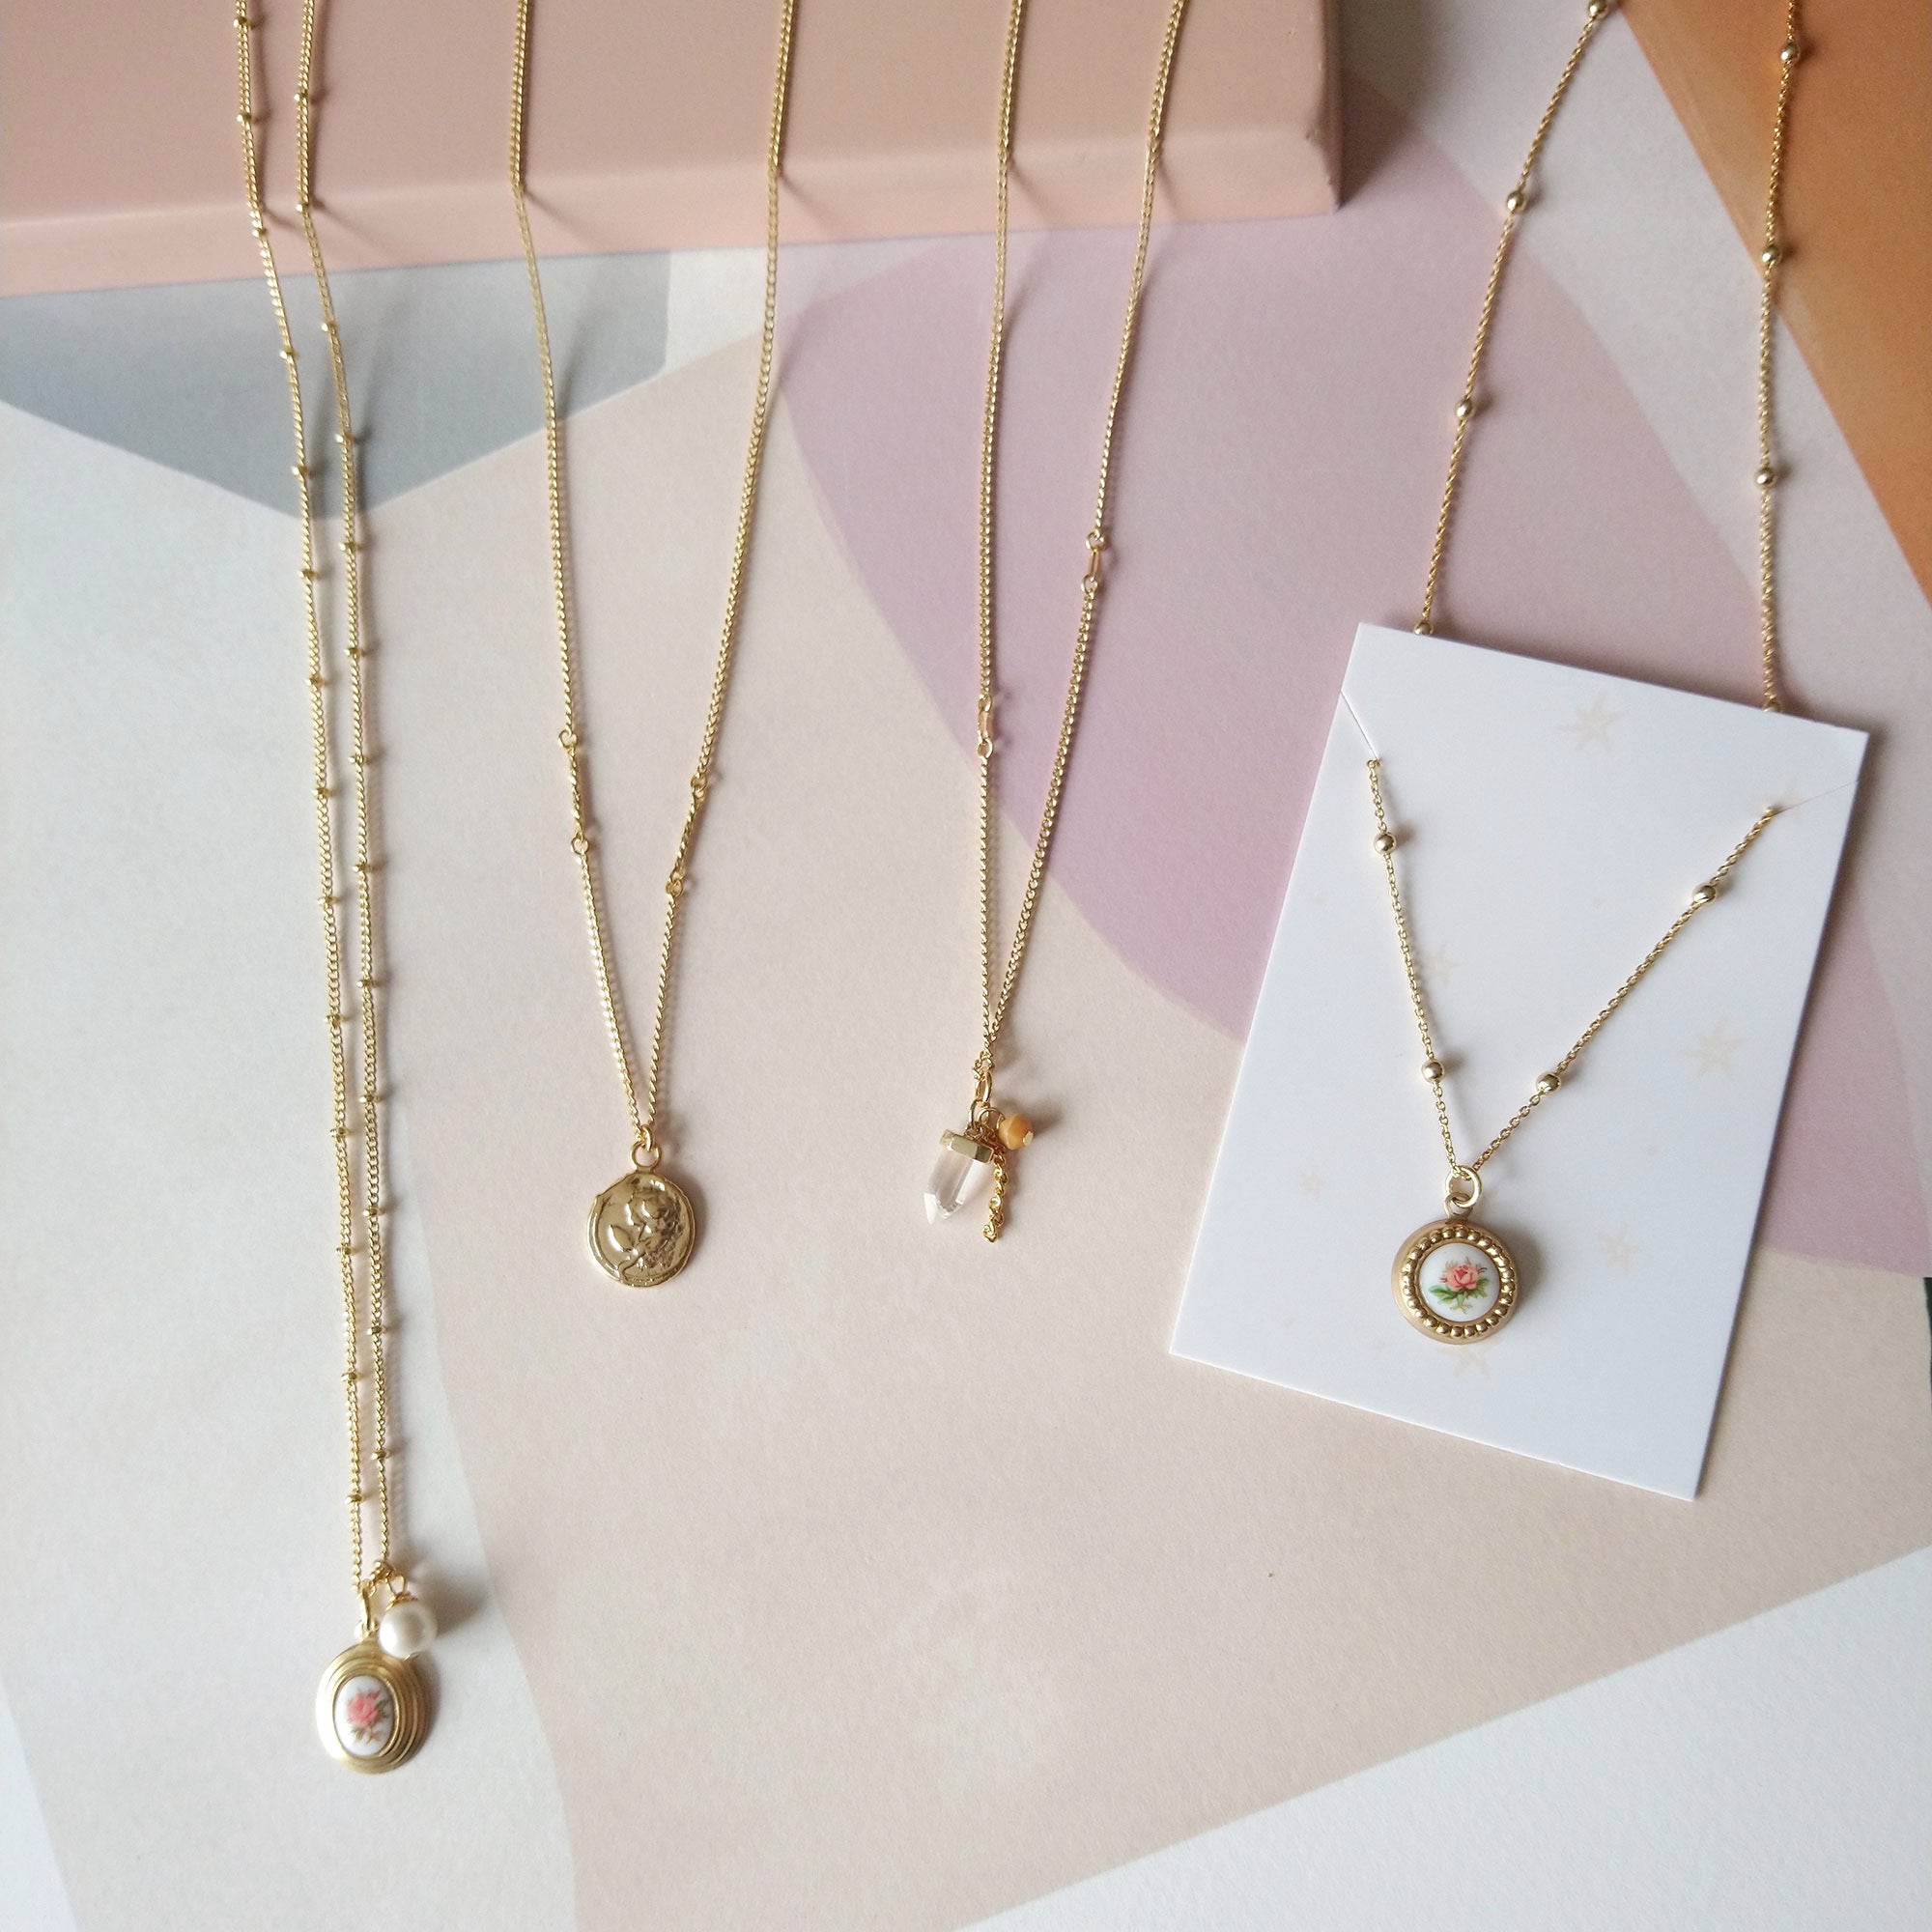 Colliers chaînes or médaillon pendentif vintage sandrine devost